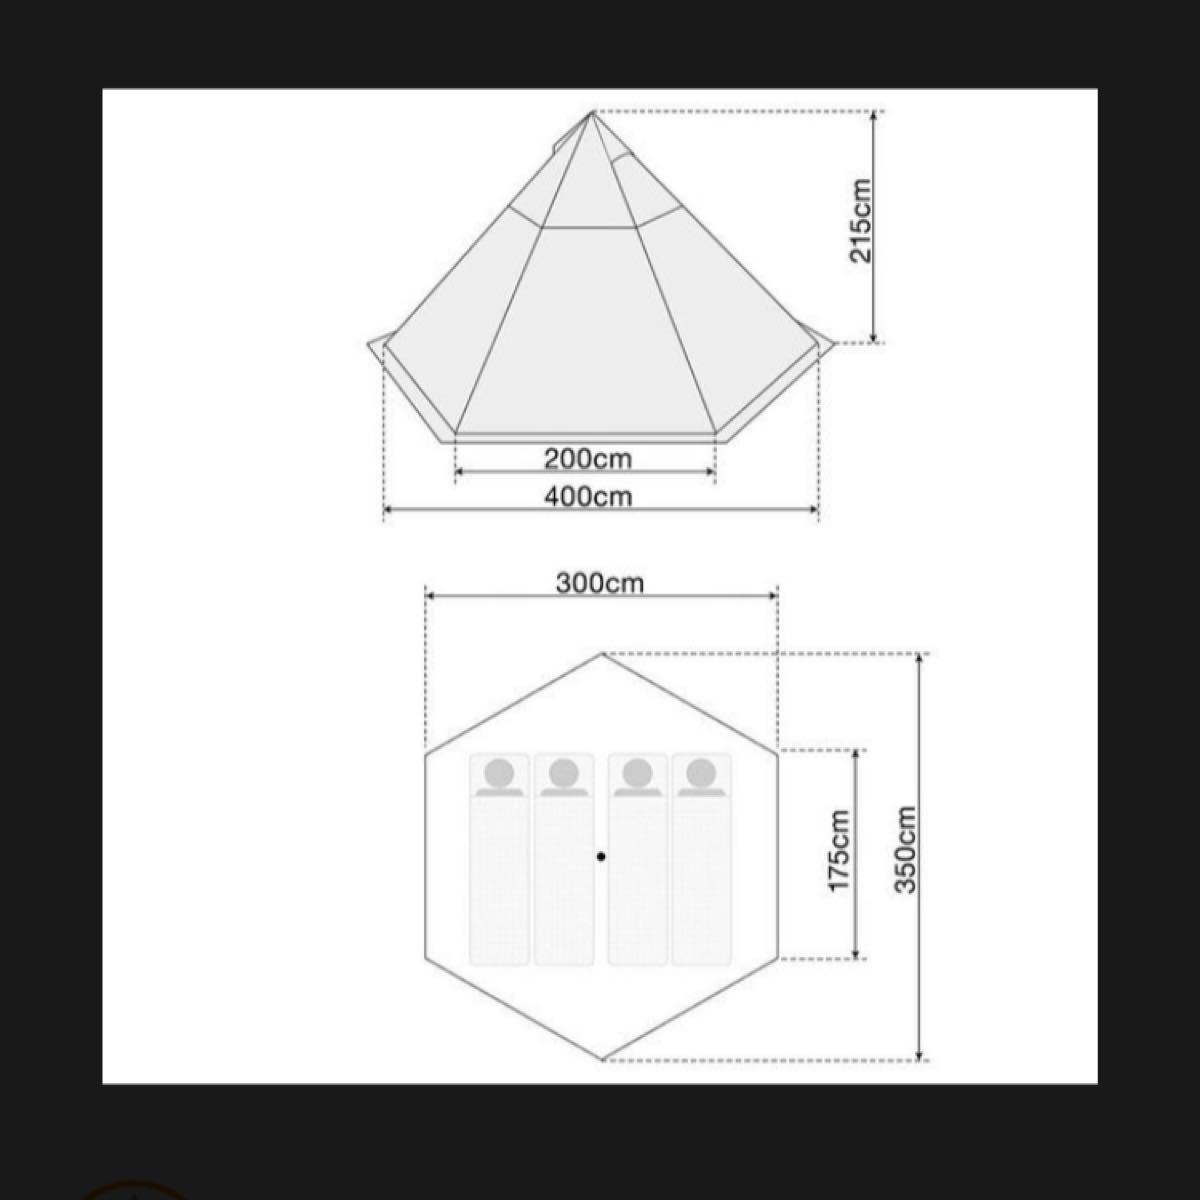 ワンポールテント TC ポリコットン UVカット ドーム型テント フルクローズテント 難燃性 T/C FIELDOOR